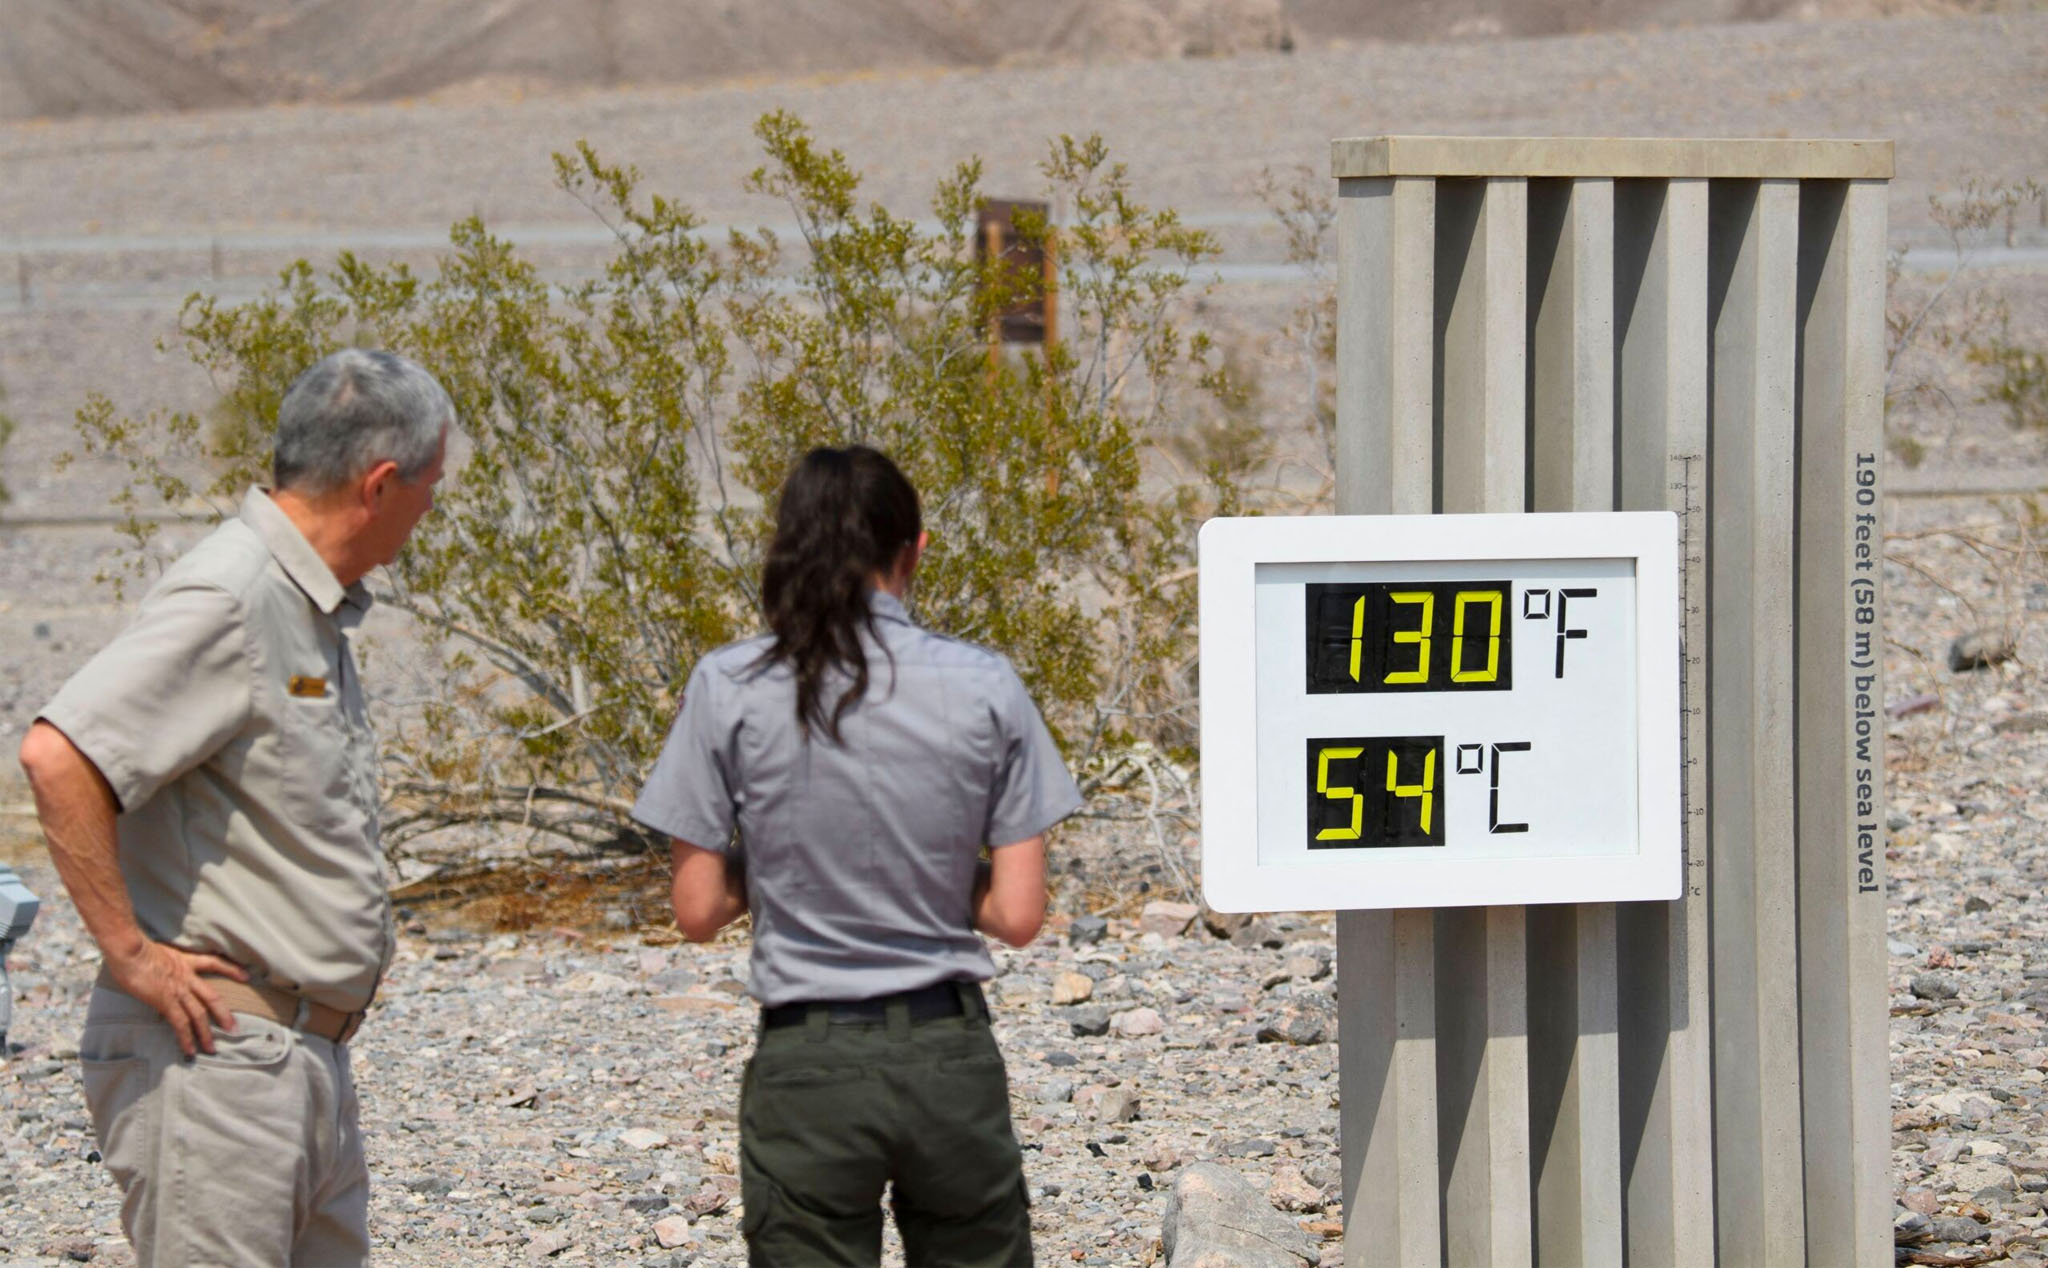 Hiện tượng "vòm nhiệt" gây ra mức nhiệt nóng kỷ lục bao trùm khắp nước Mỹ